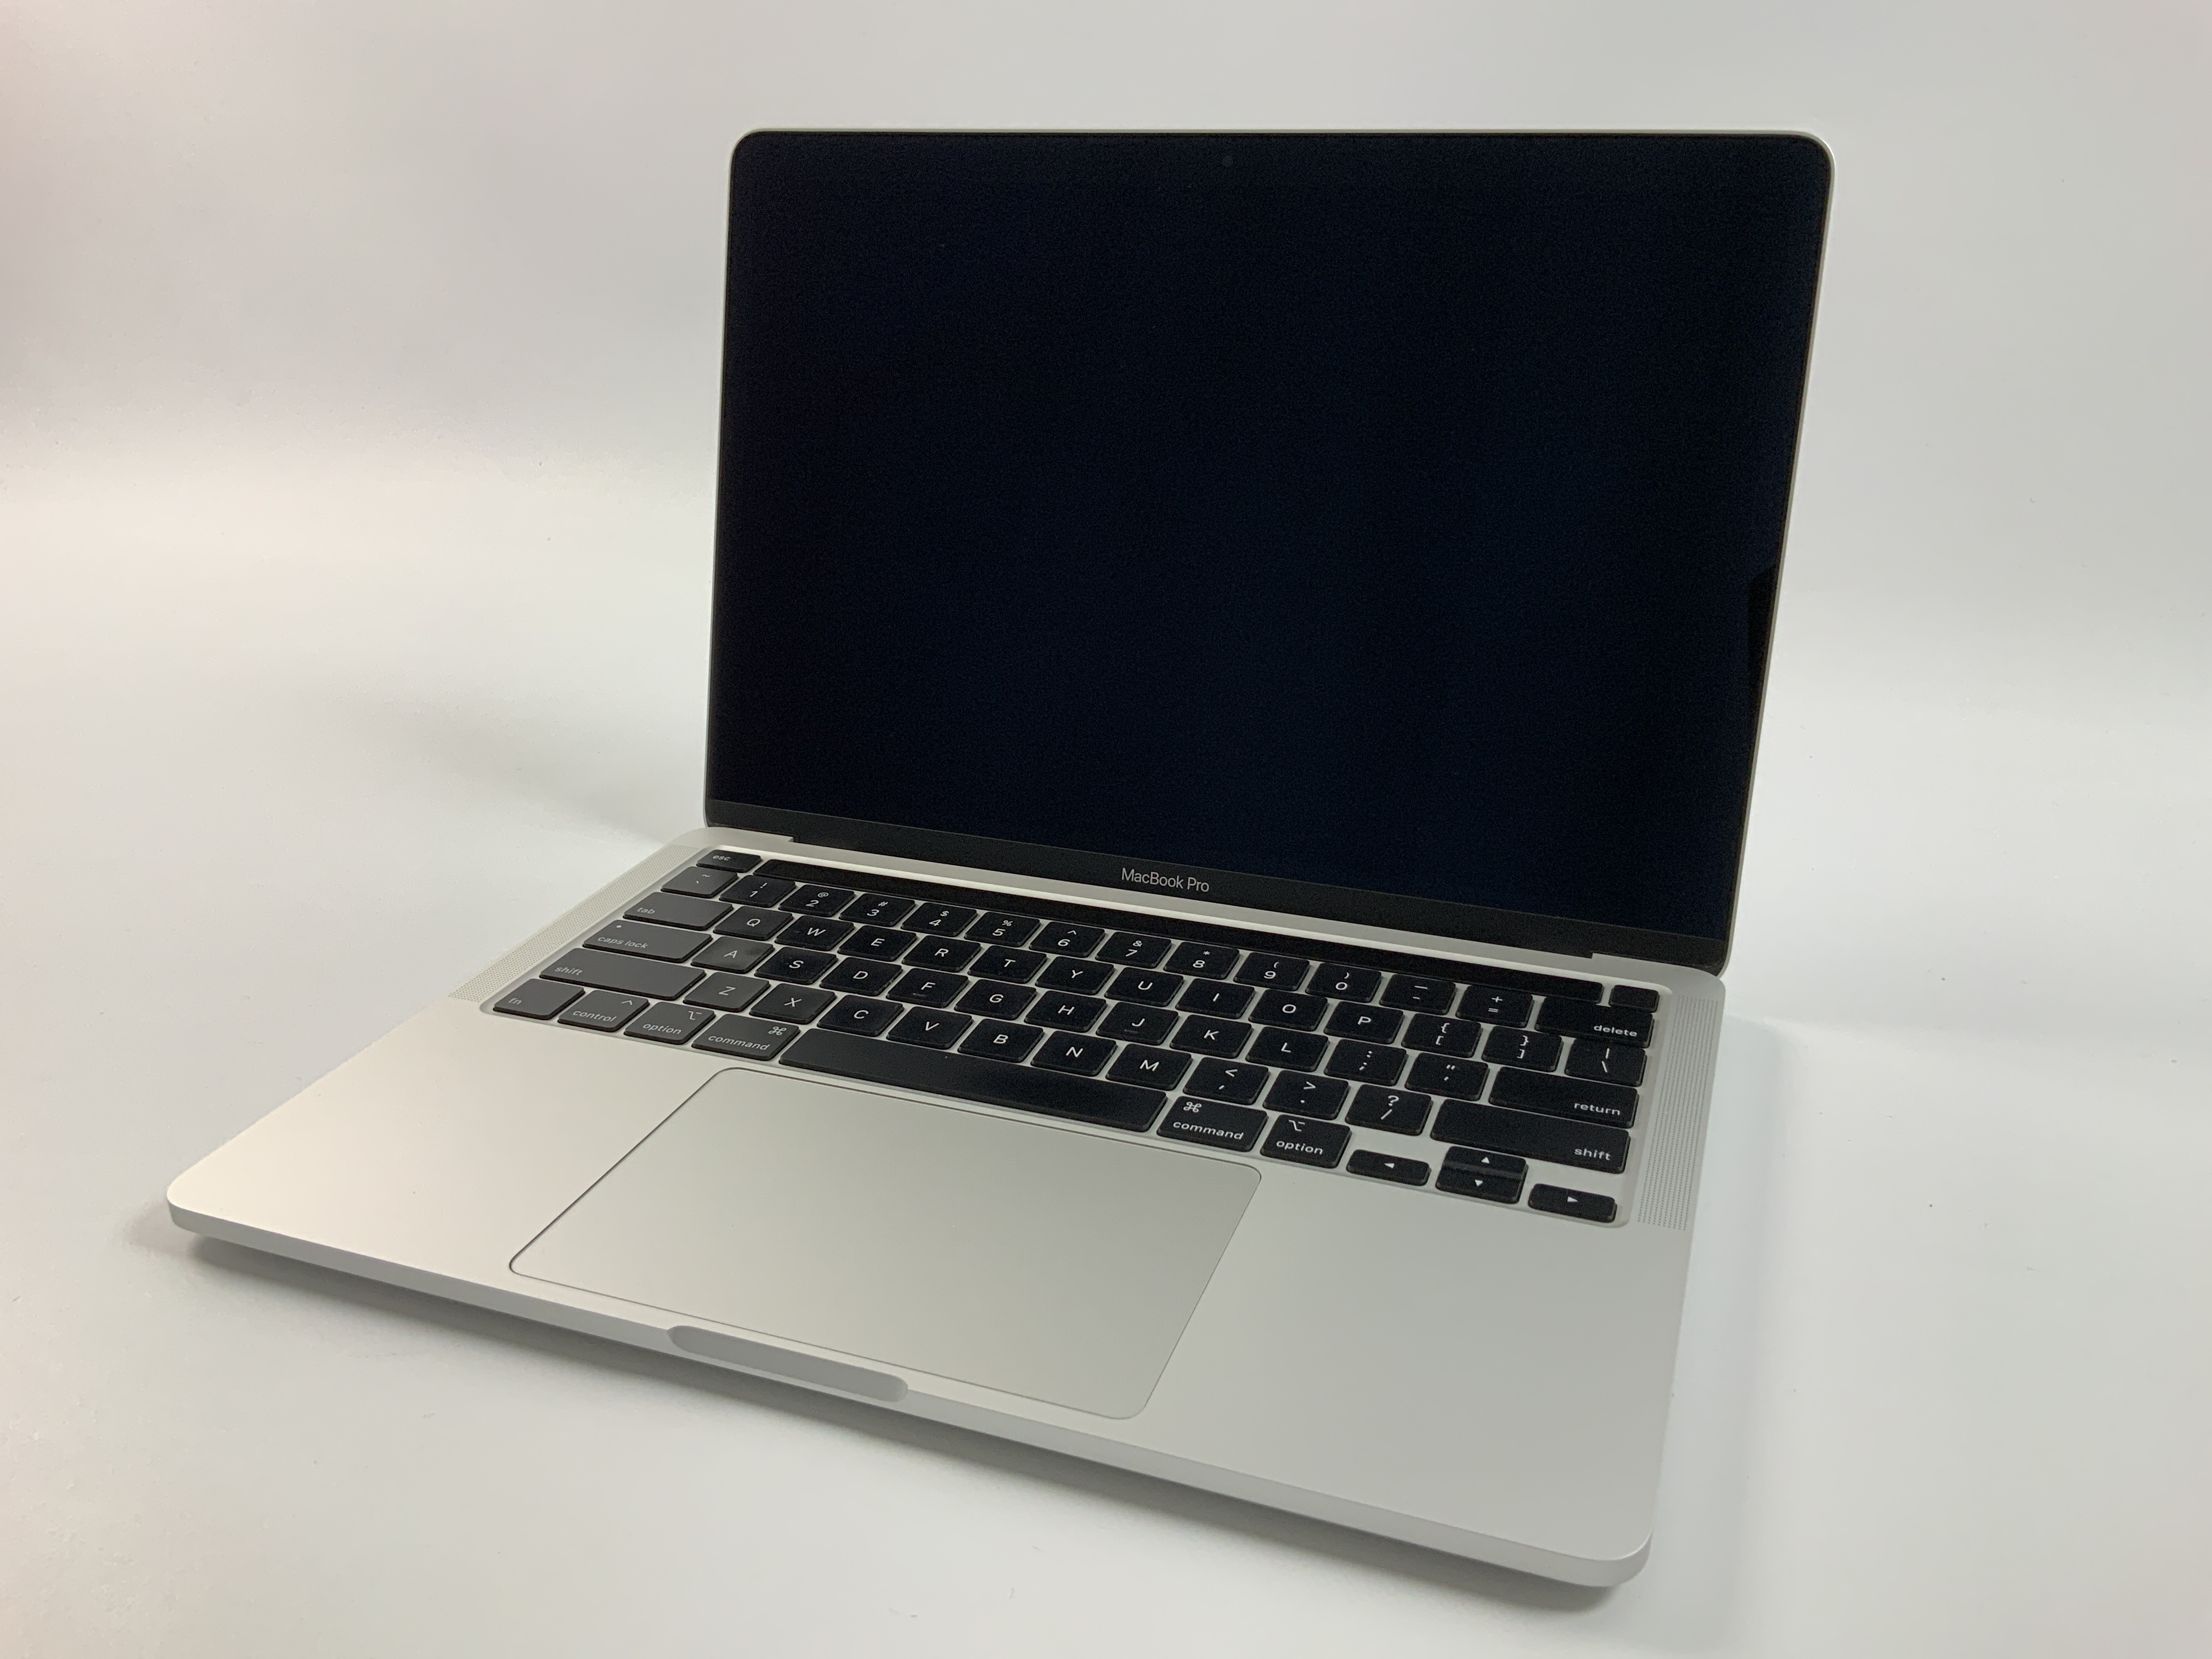 MacBook Pro 13" 2TBT Mid 2020 (Intel Quad-Core i5 1.4 GHz 8 GB RAM 512 GB SSD), Silver, Intel Quad-Core i5 1.4 GHz, 8 GB RAM, 512 GB SSD, bild 1